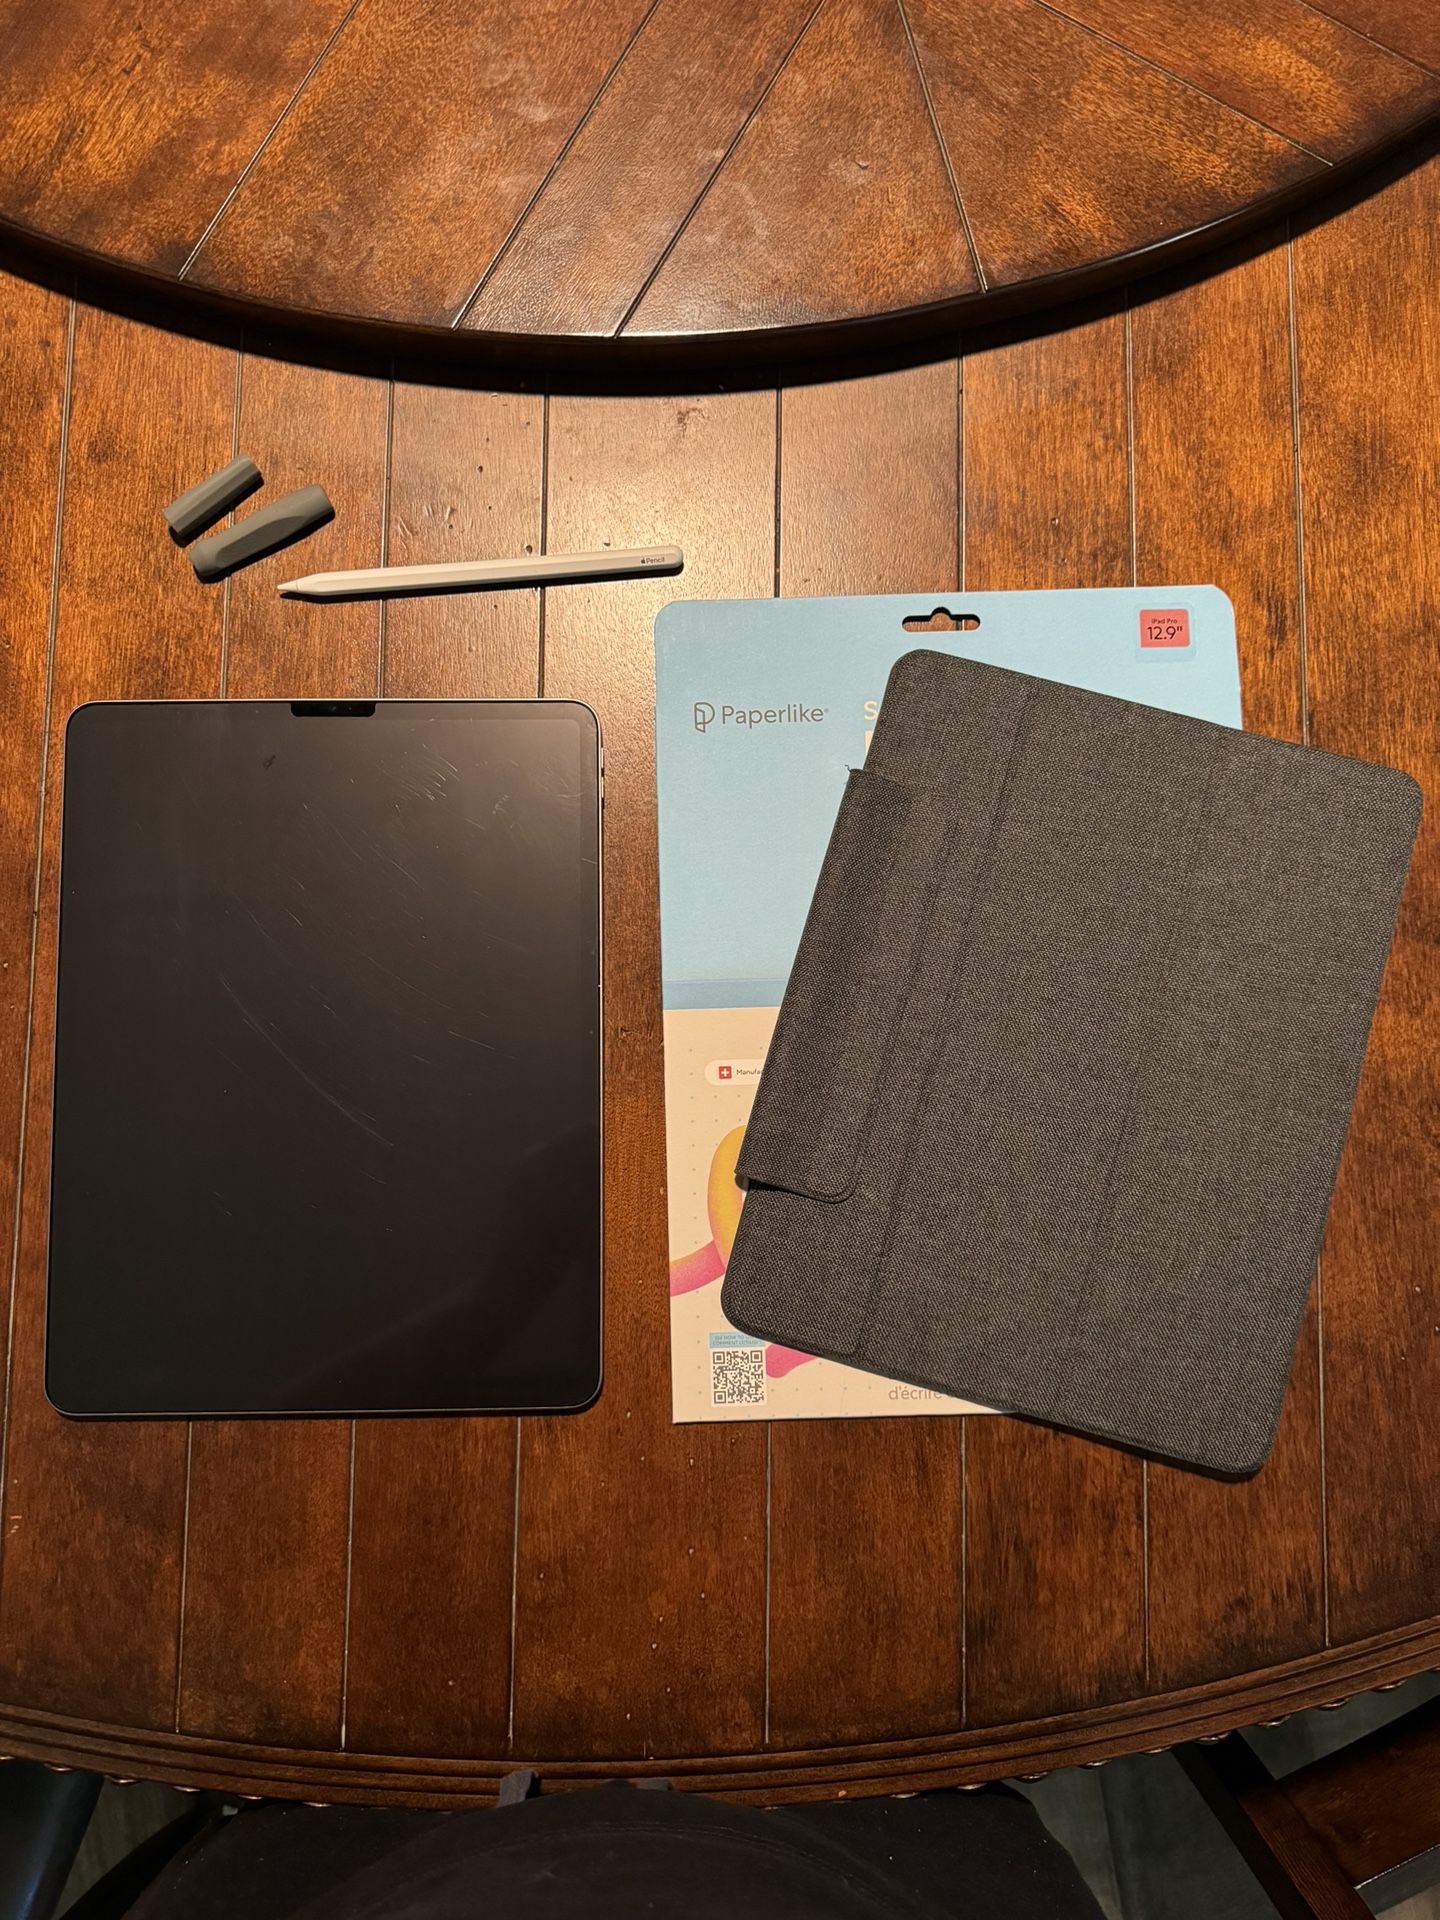 iPad Pro 12.9-in. (6th gen.) - 128GB - Space Gray - Apple Pencil (2nd gen.) - Paperlike accessories